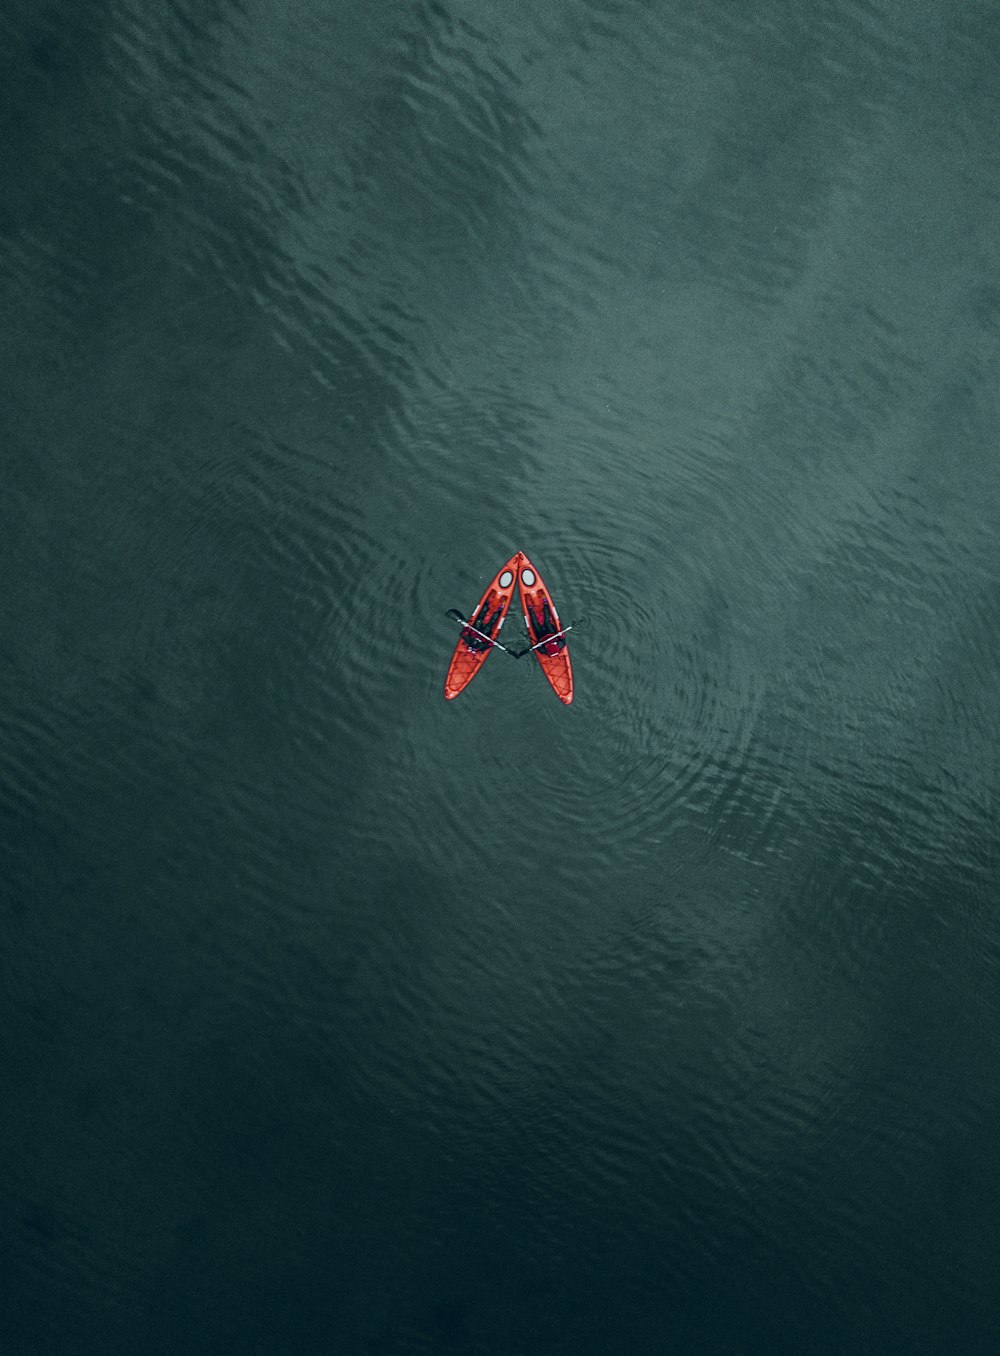 Ein rot-weißes Boot auf dem Wasser